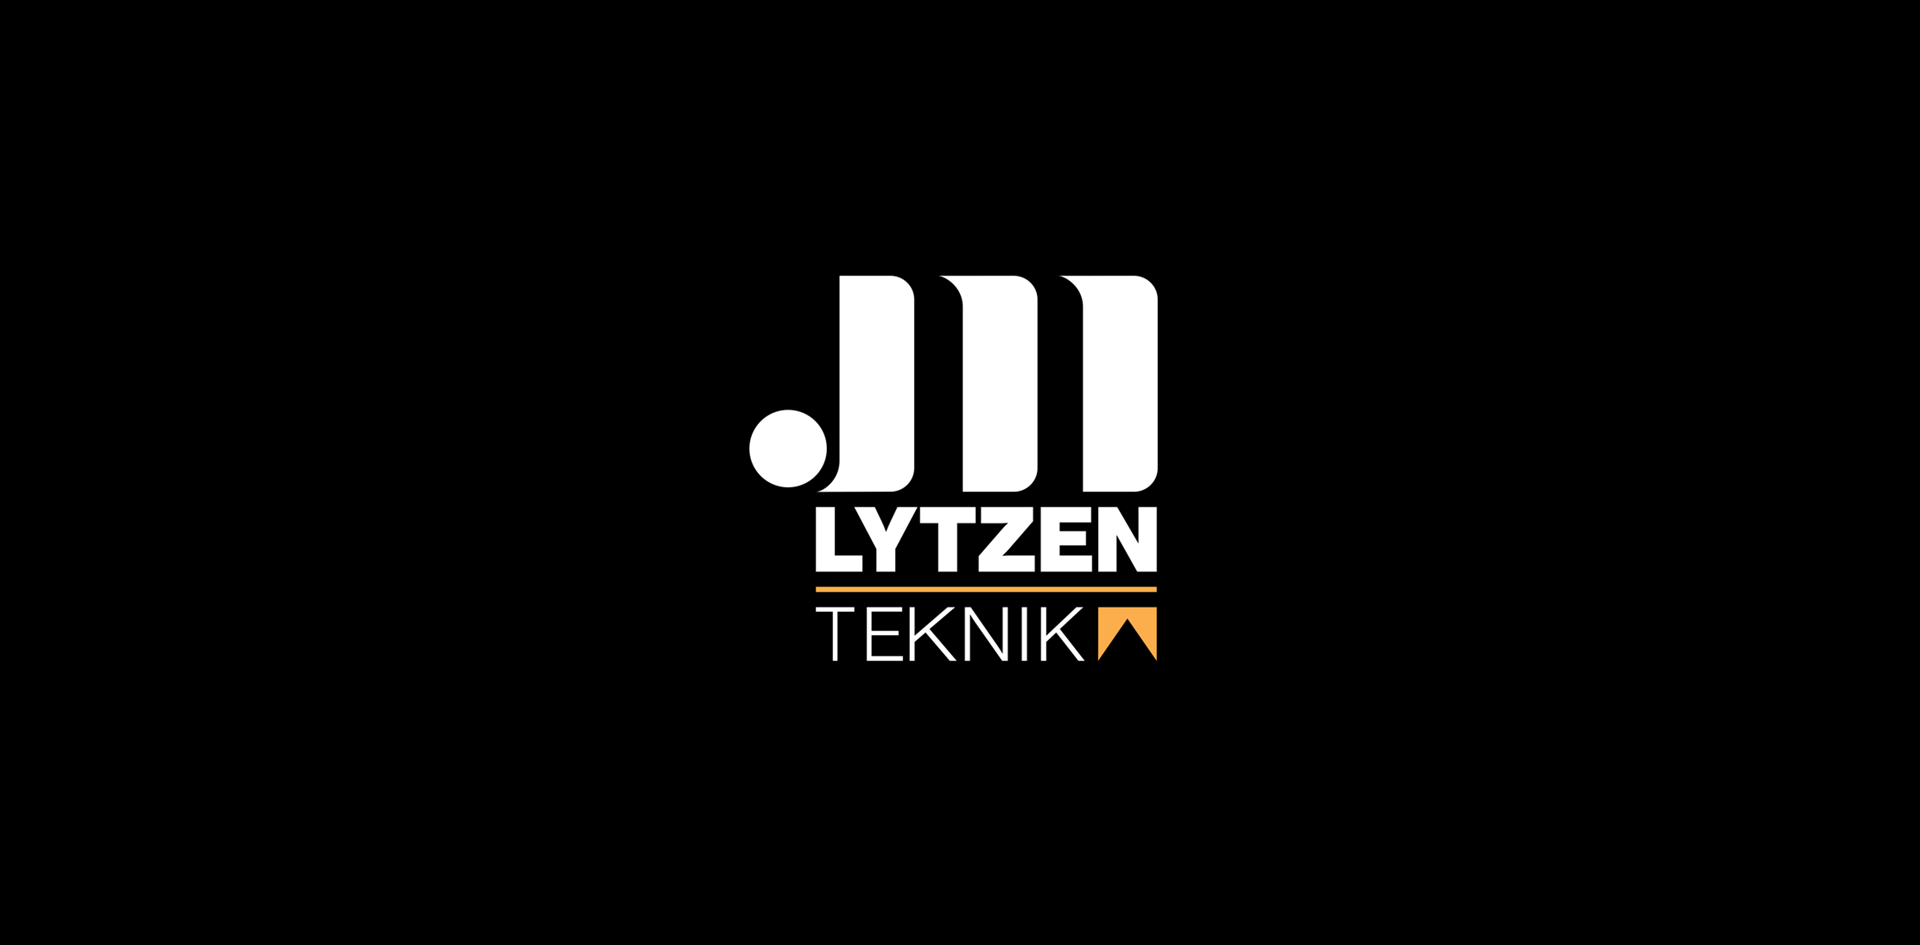 JM Lytzen Teknik